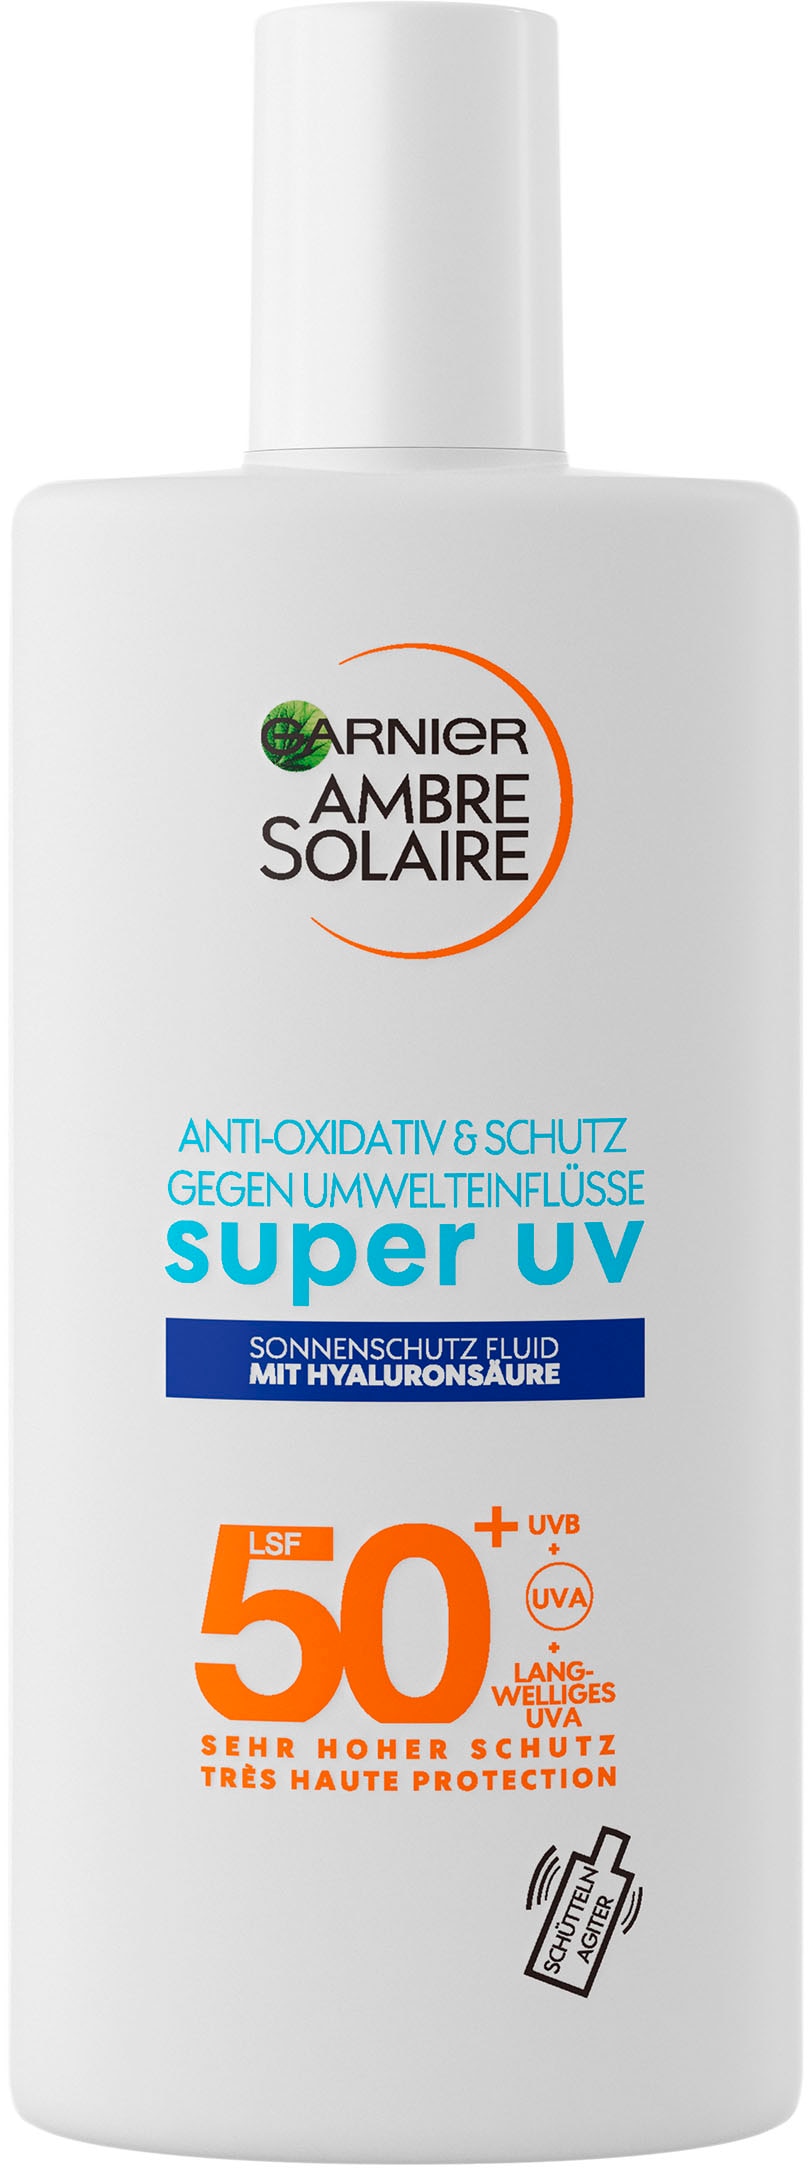 GARNIER LSF Sonnenschutzfluid expert+«, Sensitive bei 50 Solaire Hyaluronsäure mit »Ambre